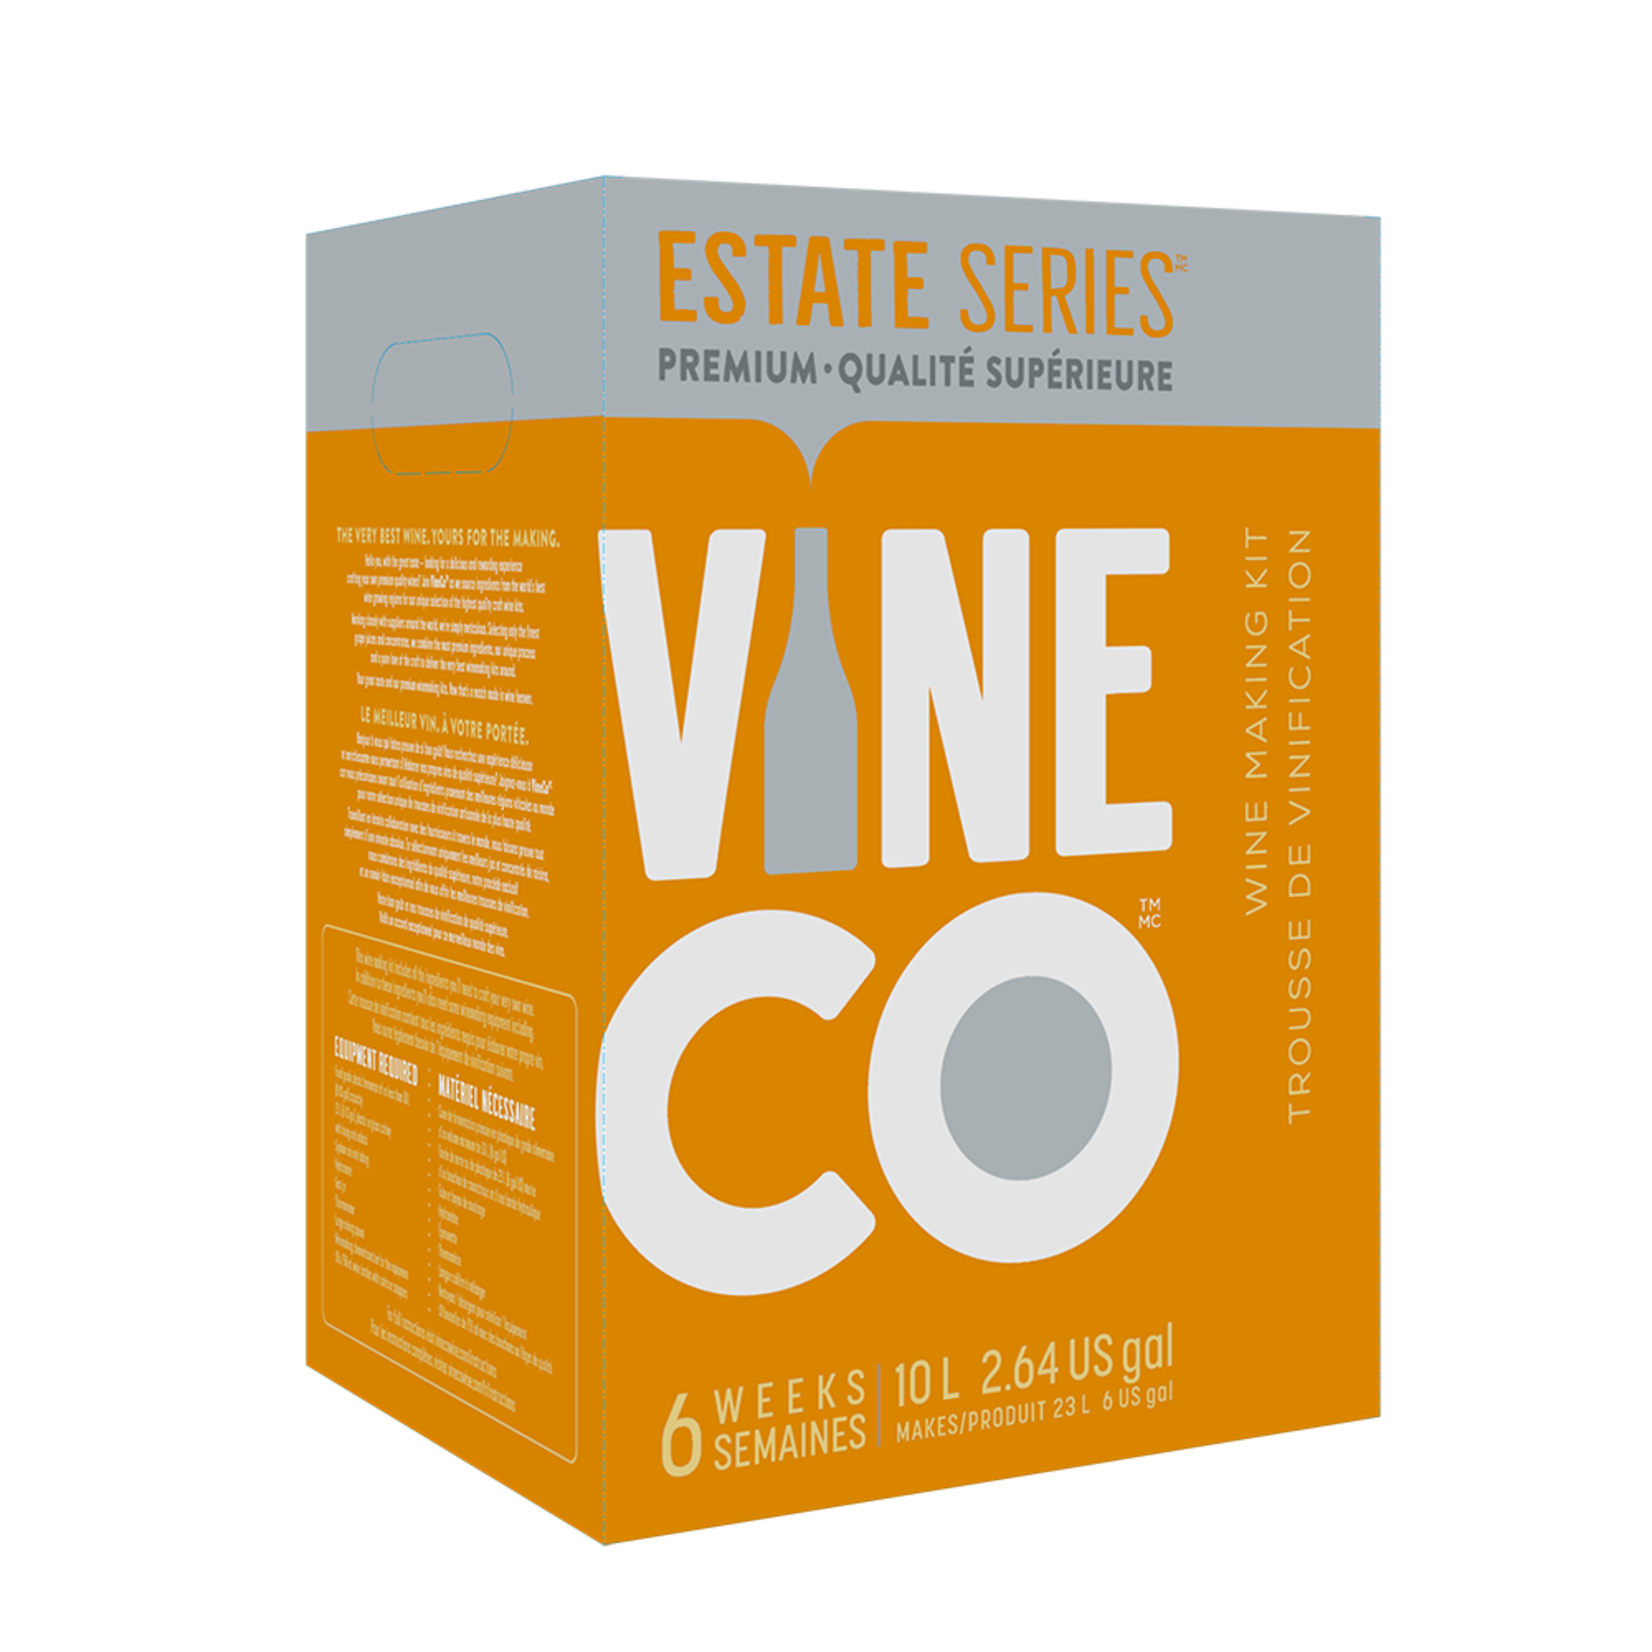 Vine Co. Estate Series Shiraz (Wine Kit), AUS